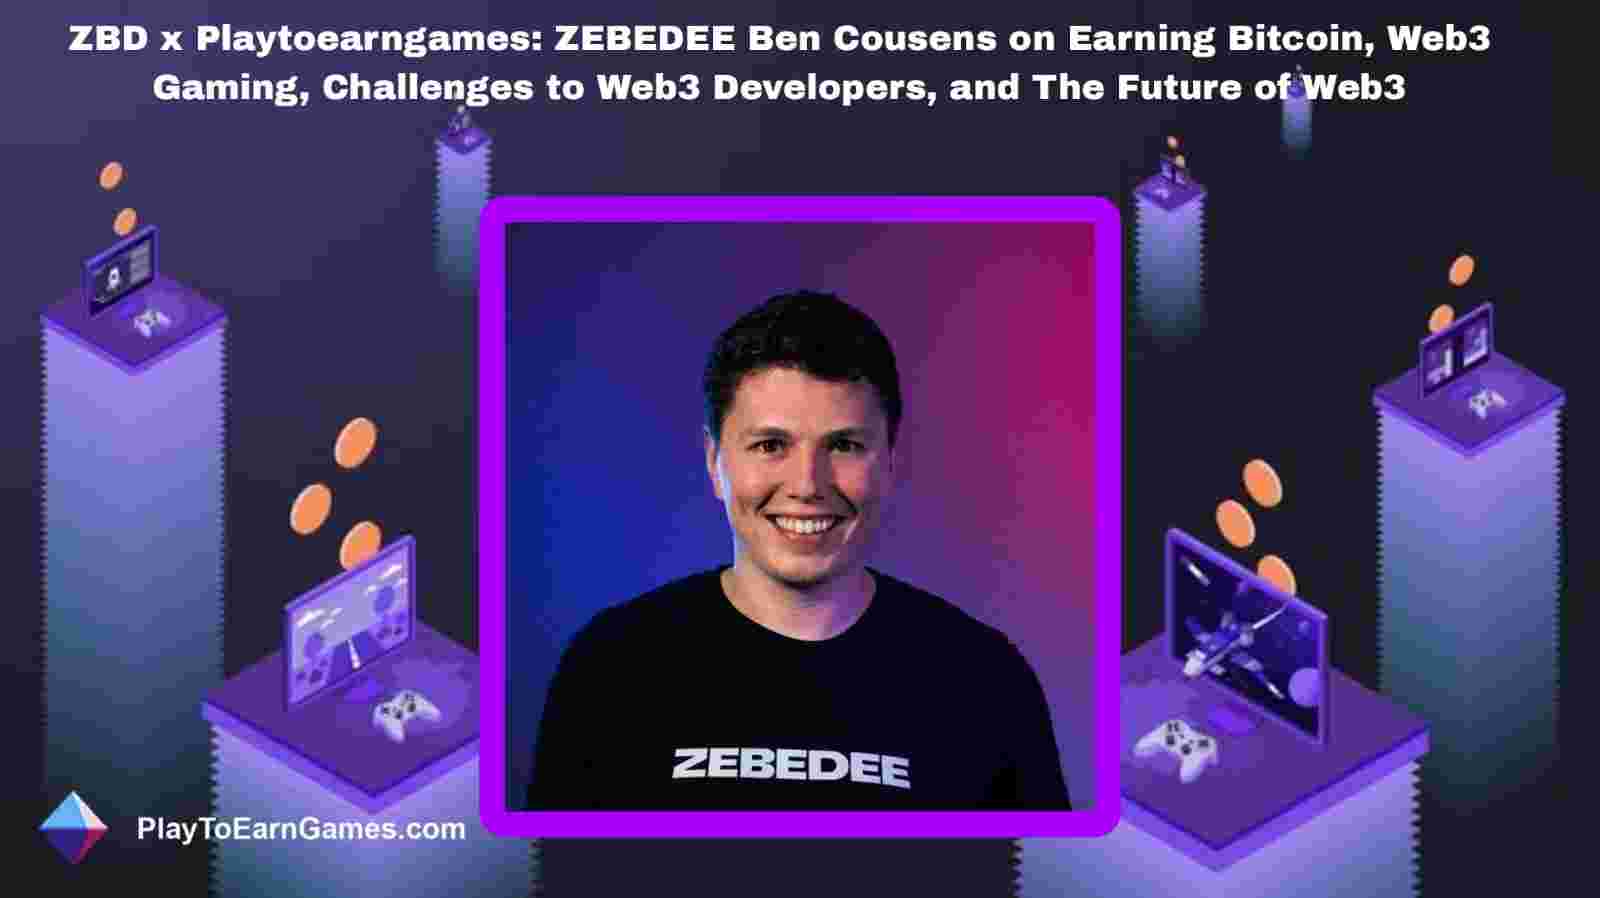 Recompensas, tendências e entrevista de Bitcoin da ZBD com Ben Cousens